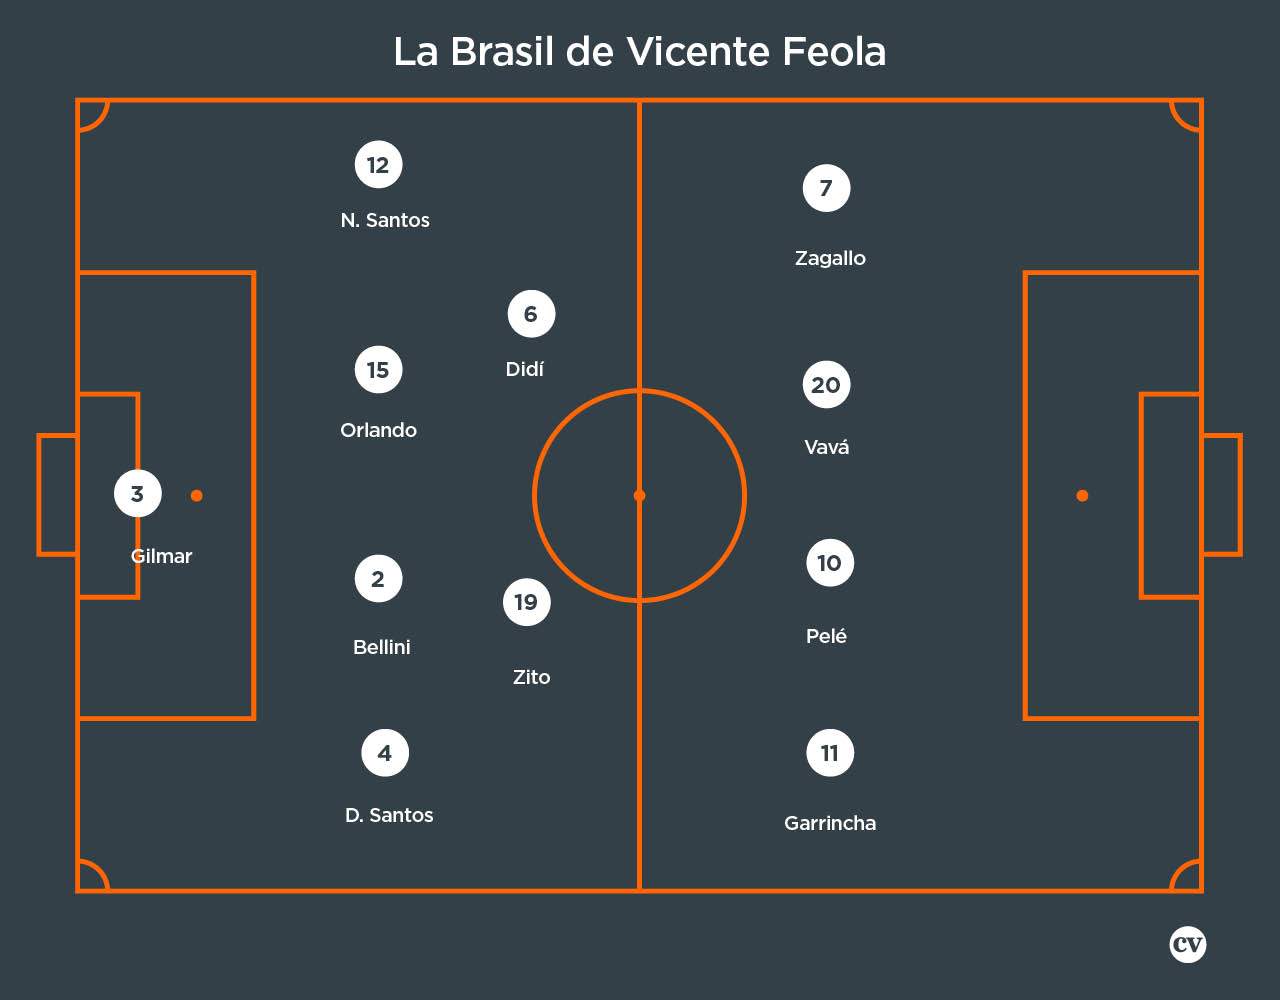 El once titular de Brasil en el Mundial de 1958 bajo el mando de otro de sus seleccionadores campeones: Vicente Feola.